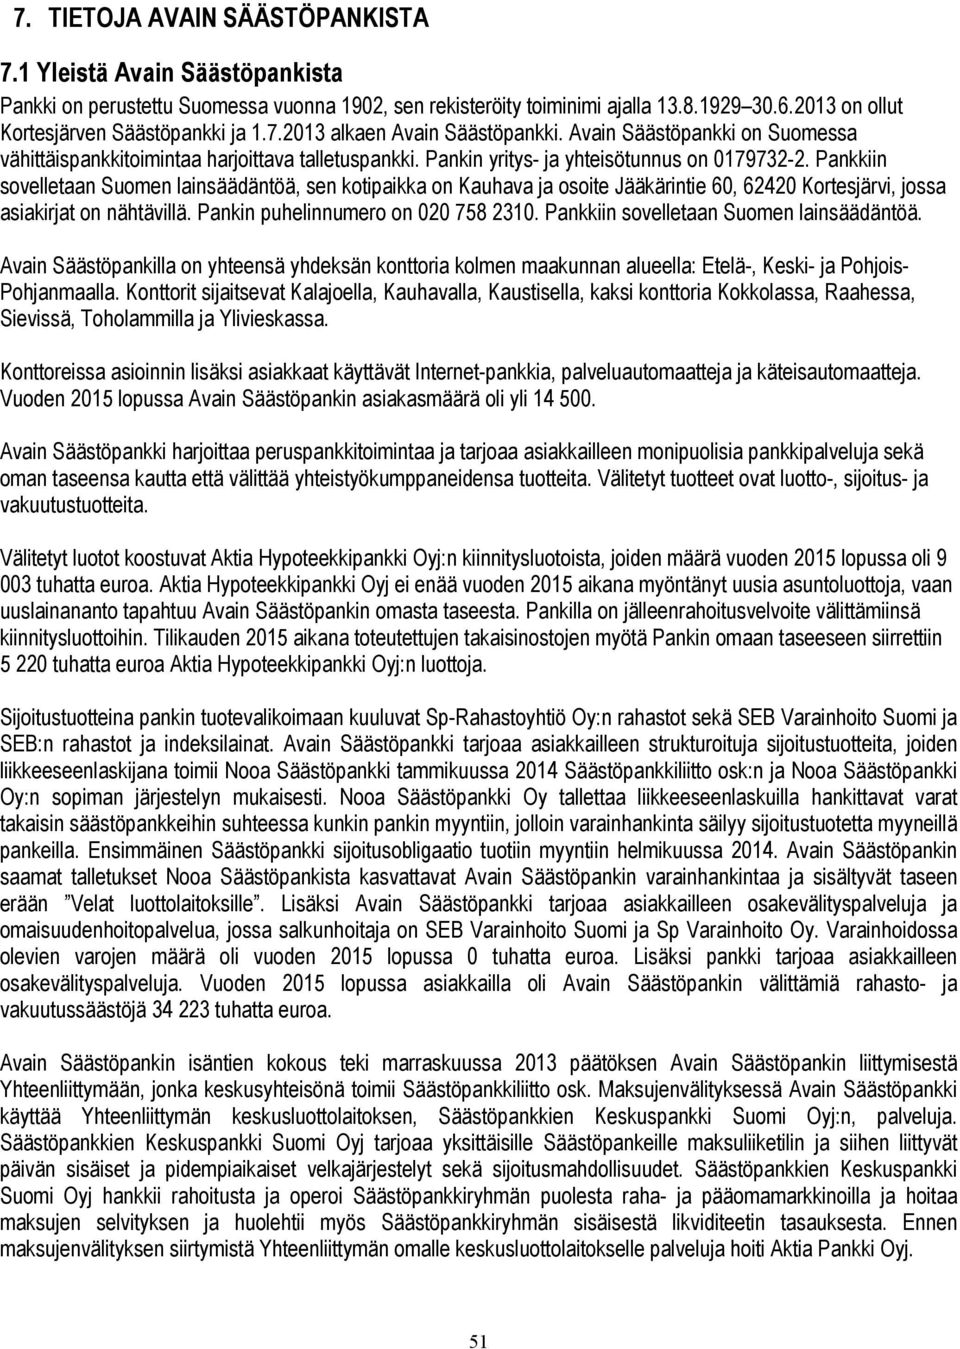 Pankin yritys- ja yhteisötunnus on 0179732-2. Pankkiin sovelletaan Suomen lainsäädäntöä, sen kotipaikka on Kauhava ja osoite Jääkärintie 60, 62420 Kortesjärvi, jossa asiakirjat on nähtävillä.